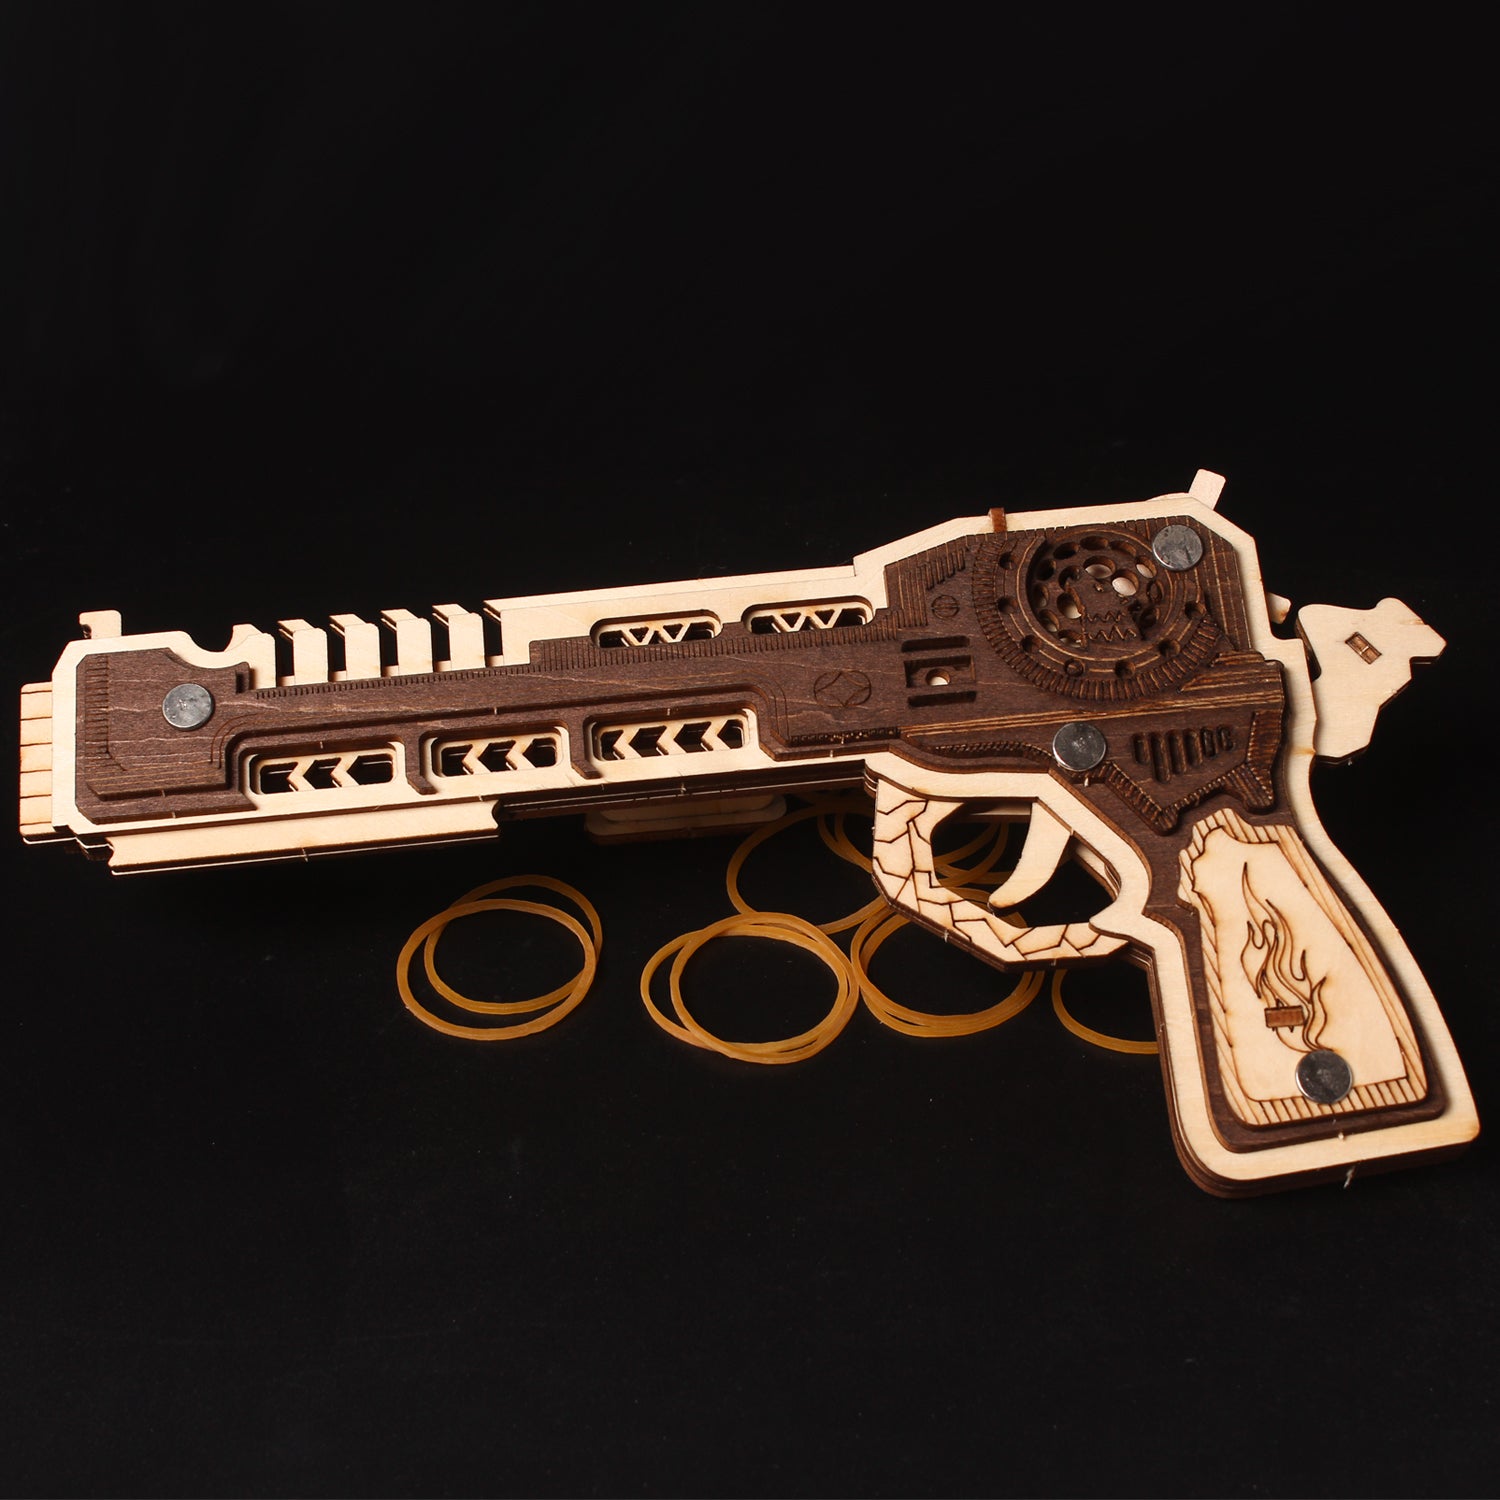 TSZH 011 DIY Guns Kit |Birthday Gift | Hobby